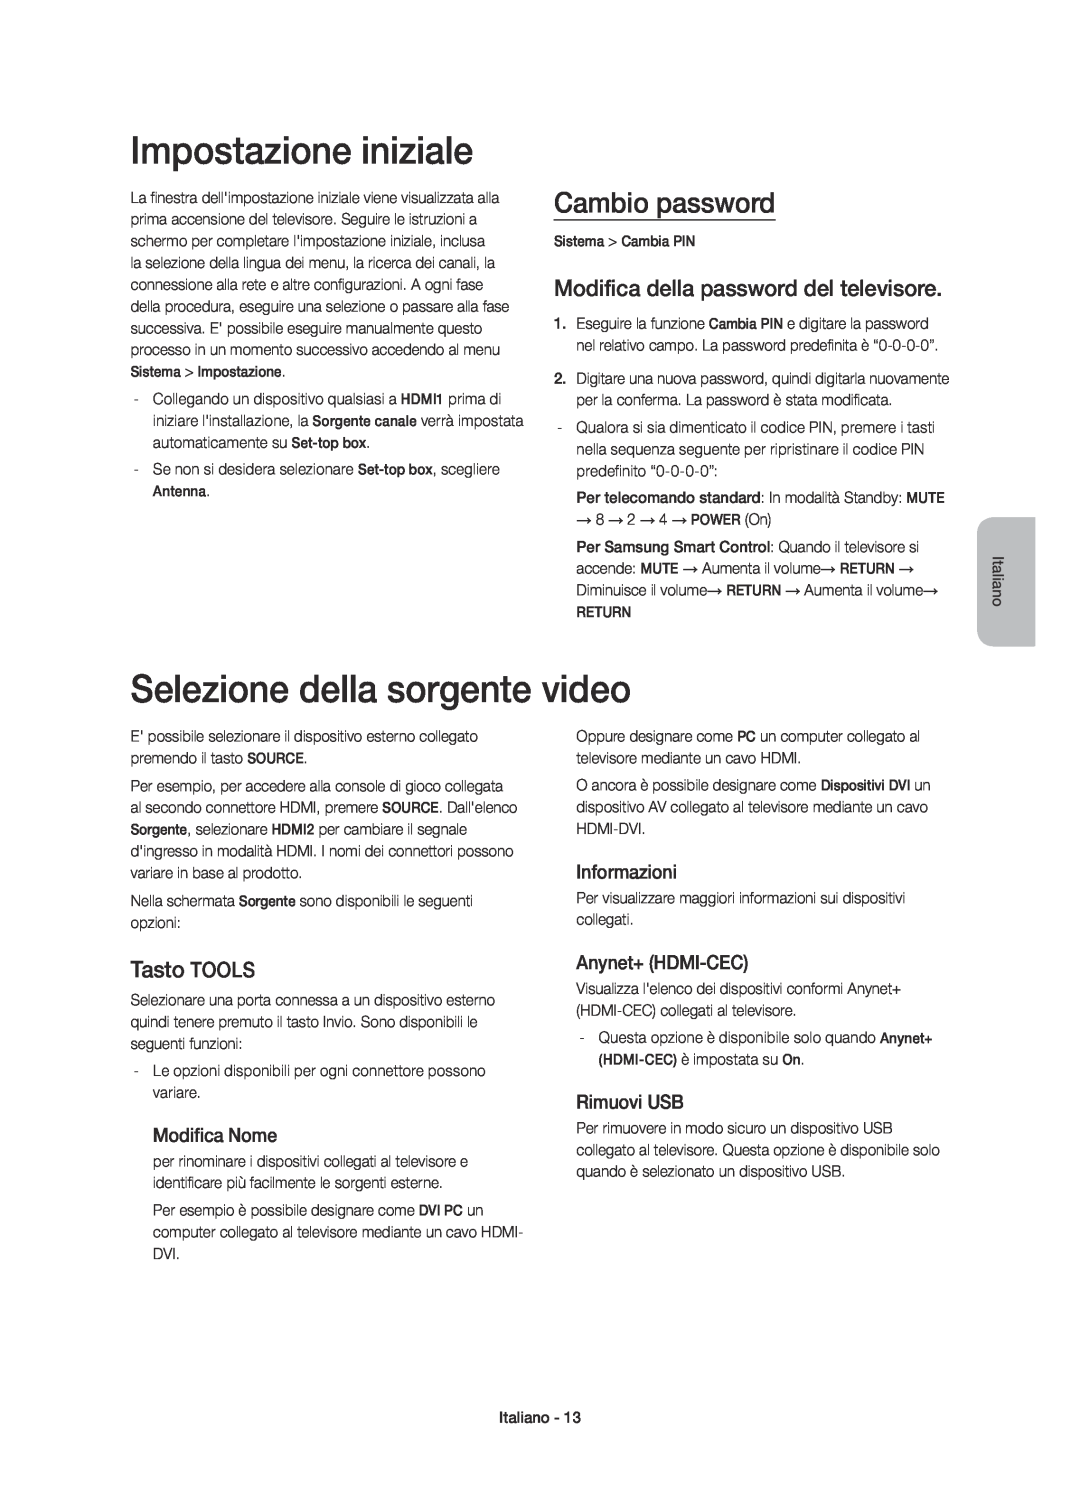 Samsung UE48H6600SVXZG Impostazione iniziale, Selezione della sorgente video, Cambio password, Tasto TOOLS, Informazioni 